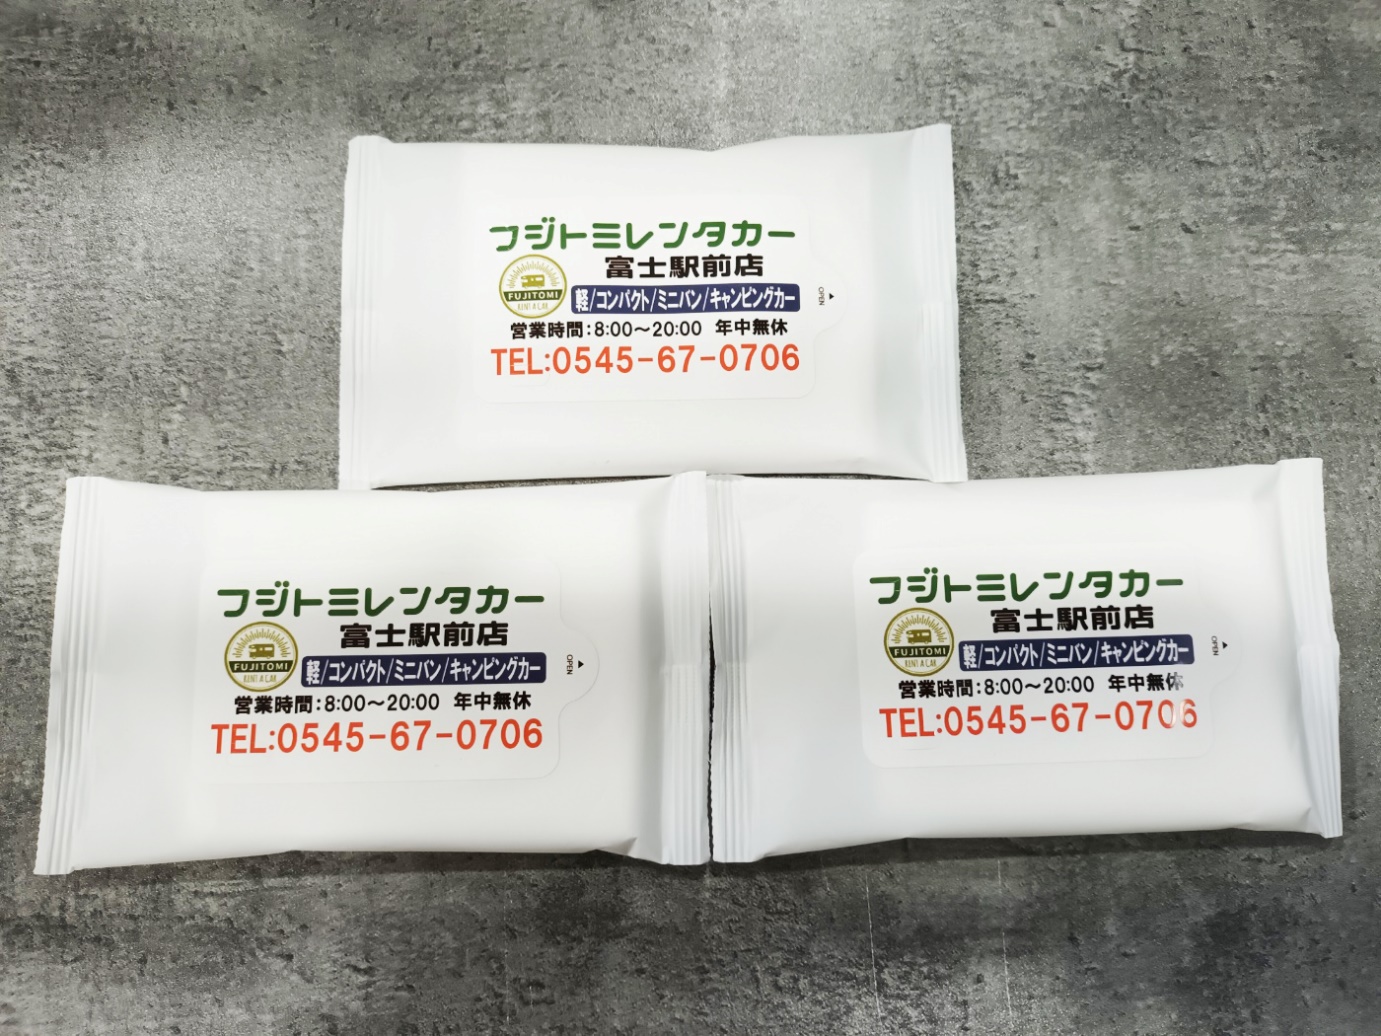 フジトミレンタカー, 富士駅前店, FUJITOMIRENTCARの印刷ウェットティッシュ